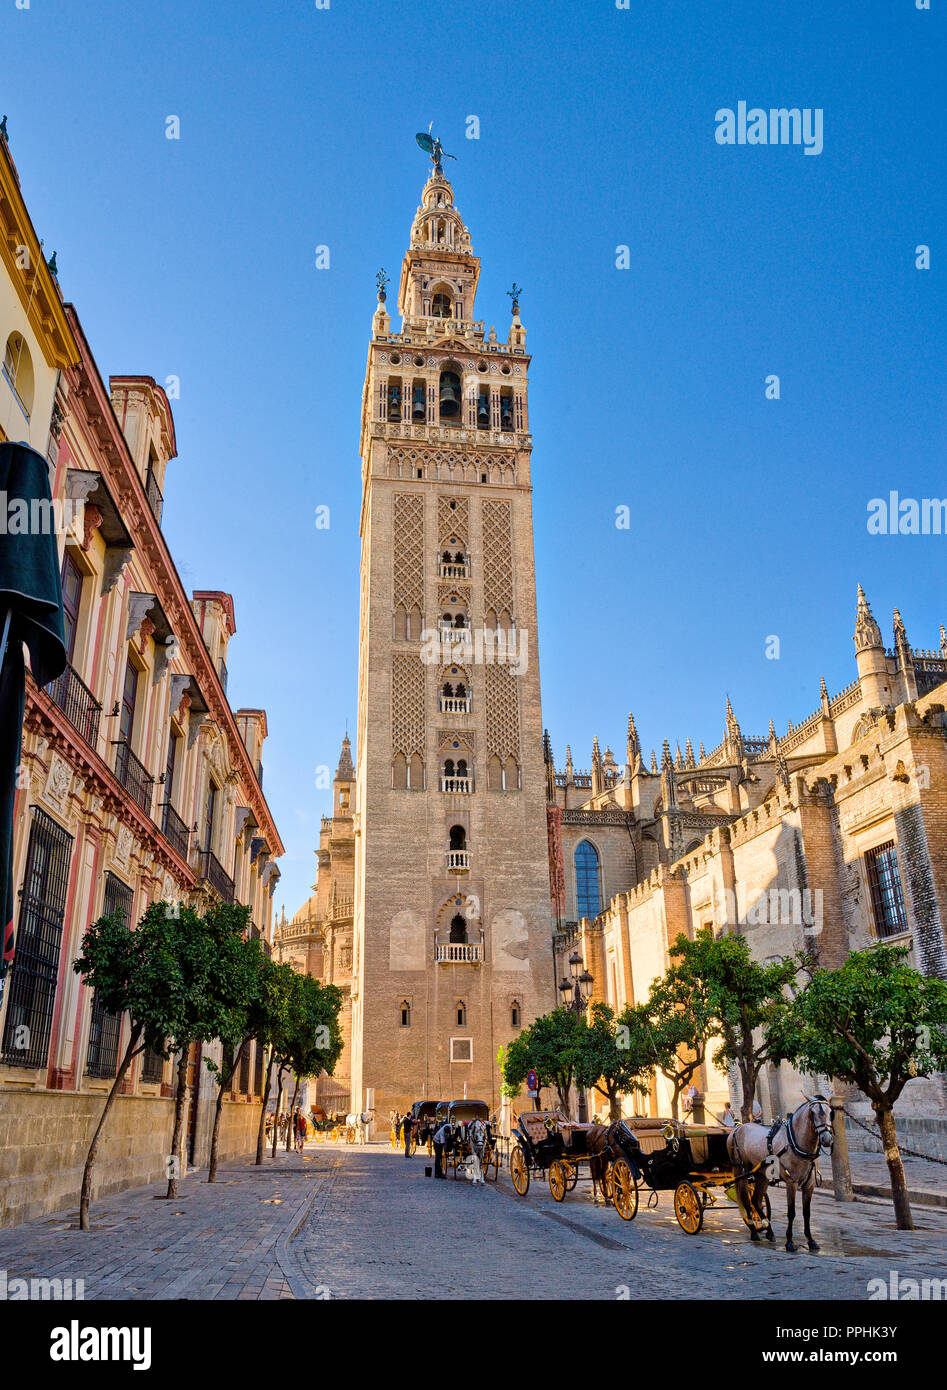 La Torre de la Giralda, Seville, Spain Stock Photo